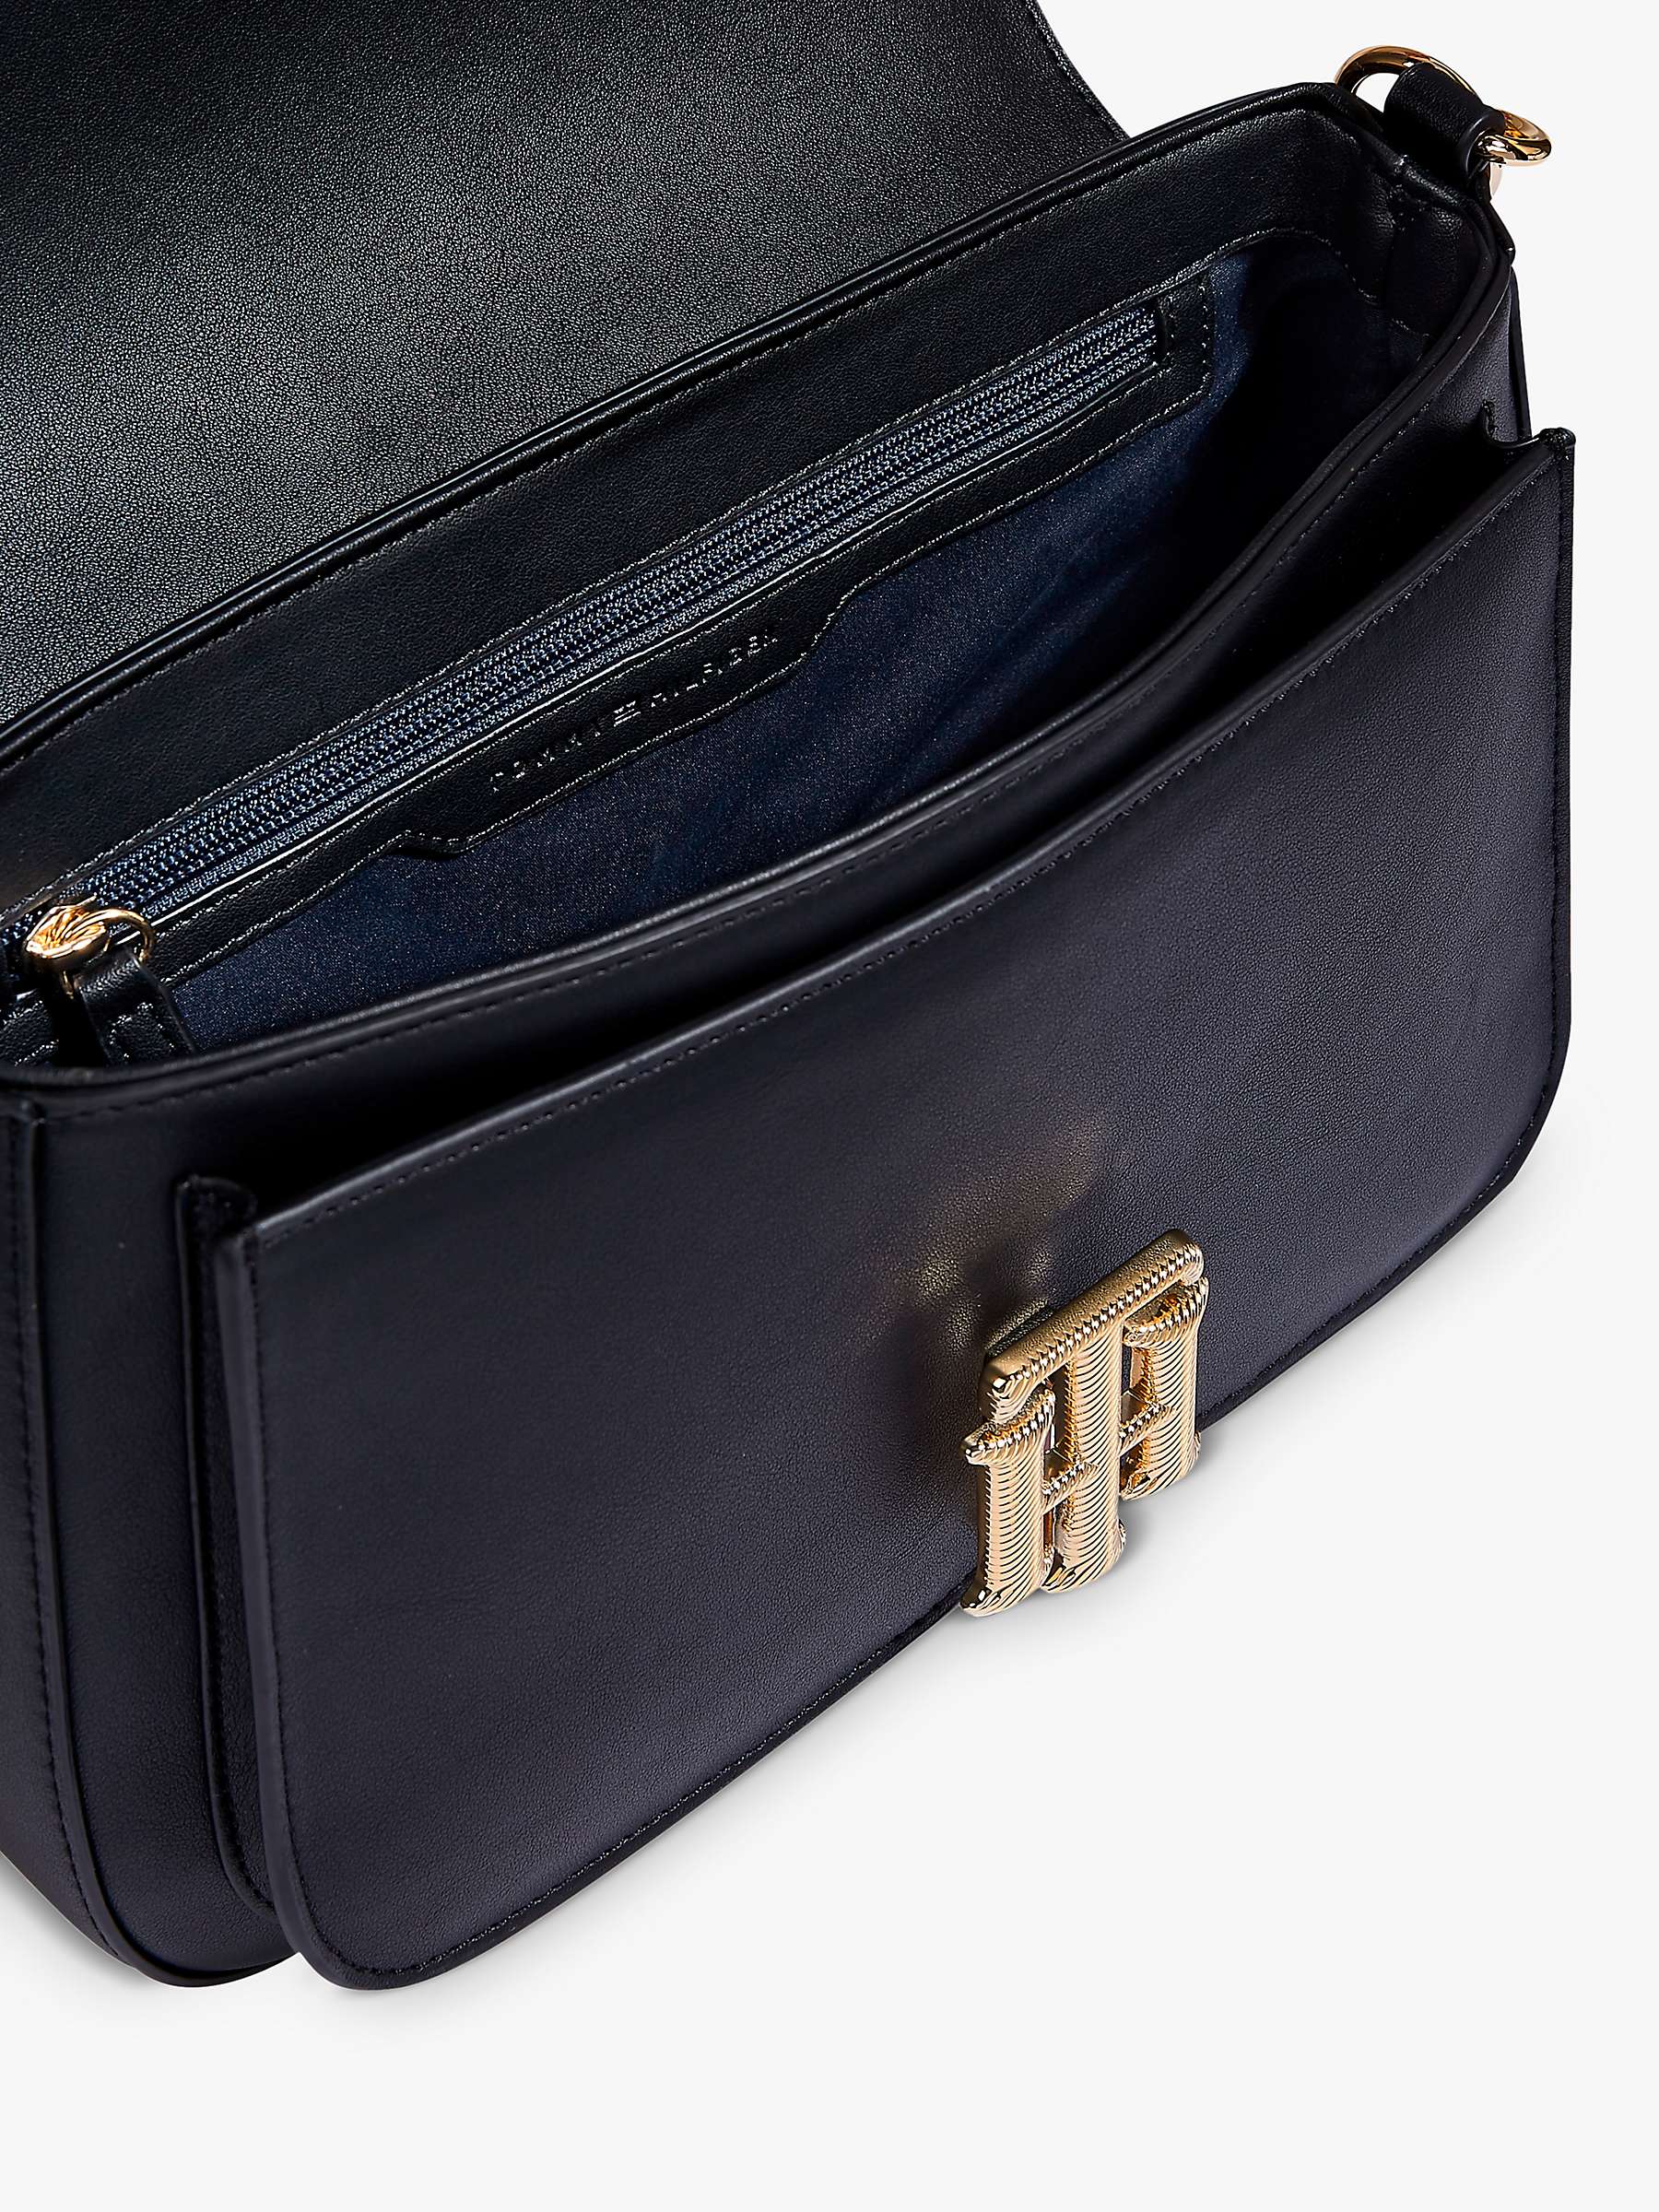 Buy Tommy Hilfiger Monogram Lock Satchel Shoulder Bag, Black Online at johnlewis.com